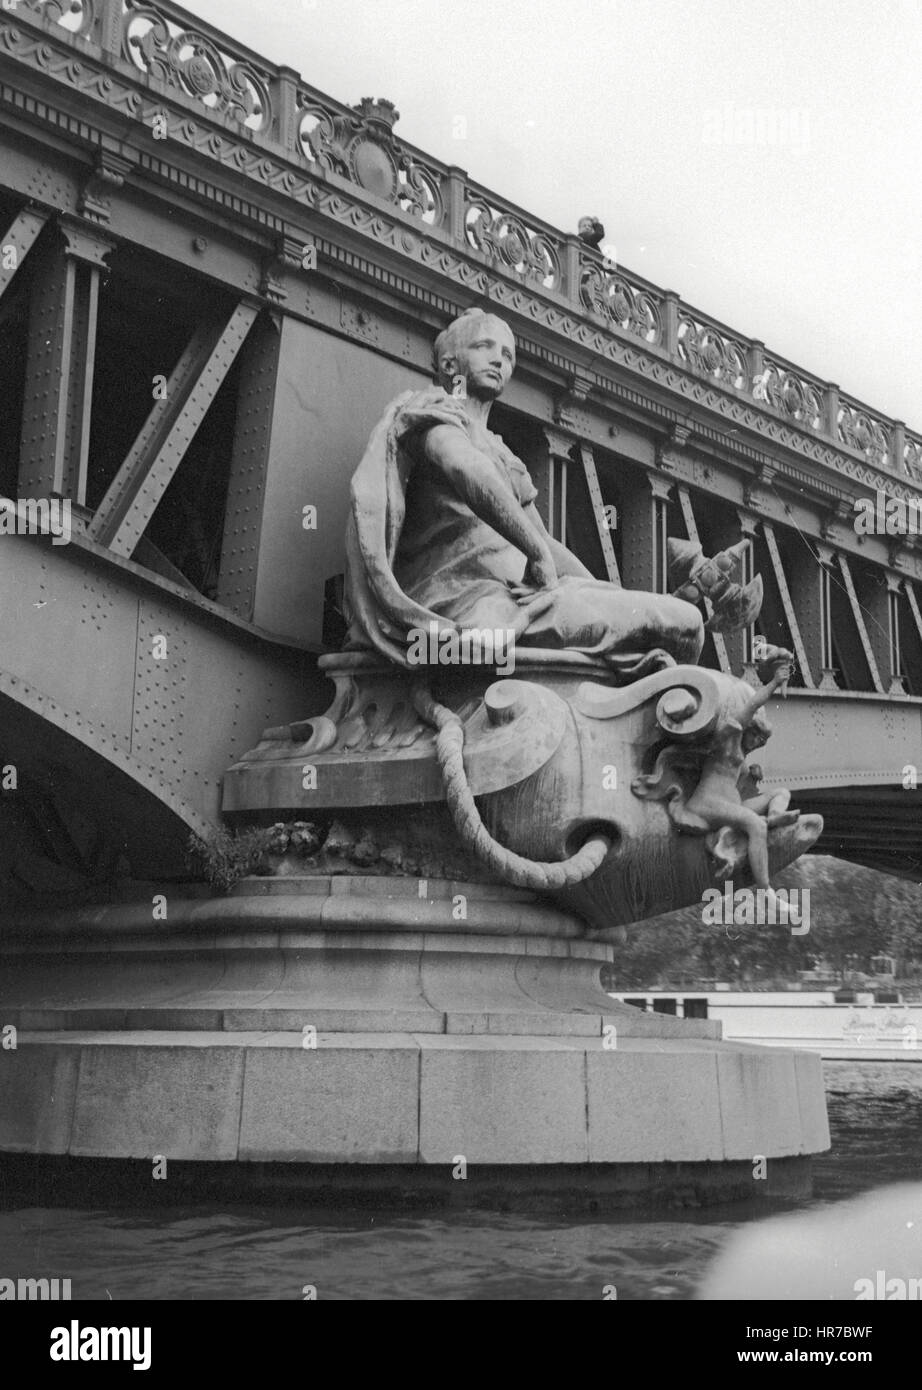 Le pont Mirabeau sur la Seine présentent des sculptures en bronze sur le tas. Cette figure sur la rive droite est la ville de Paris. Banque D'Images